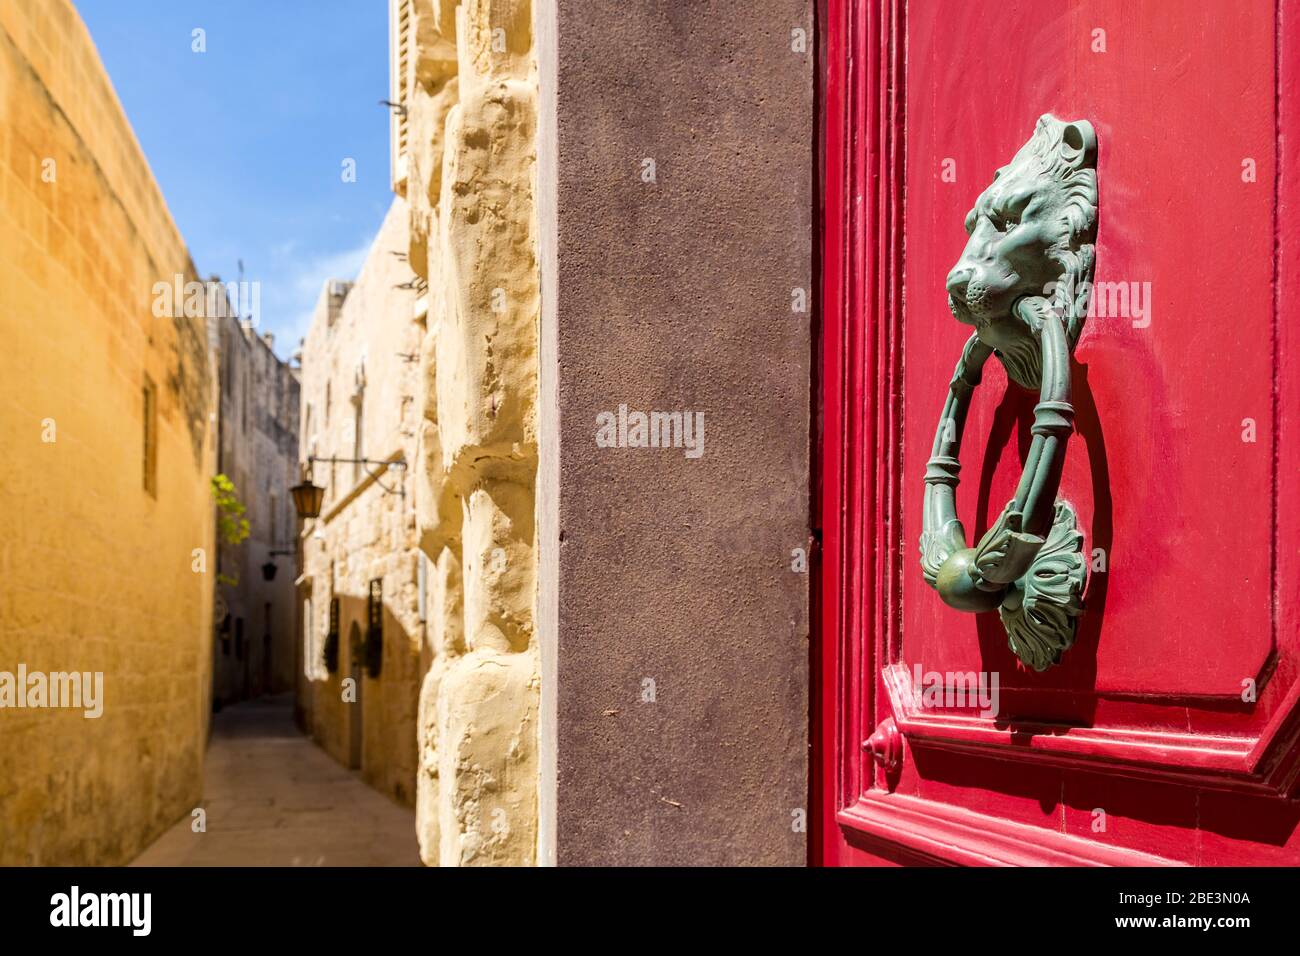 Door knocker on red door, walled city of Mdina, Malta Stock Photo